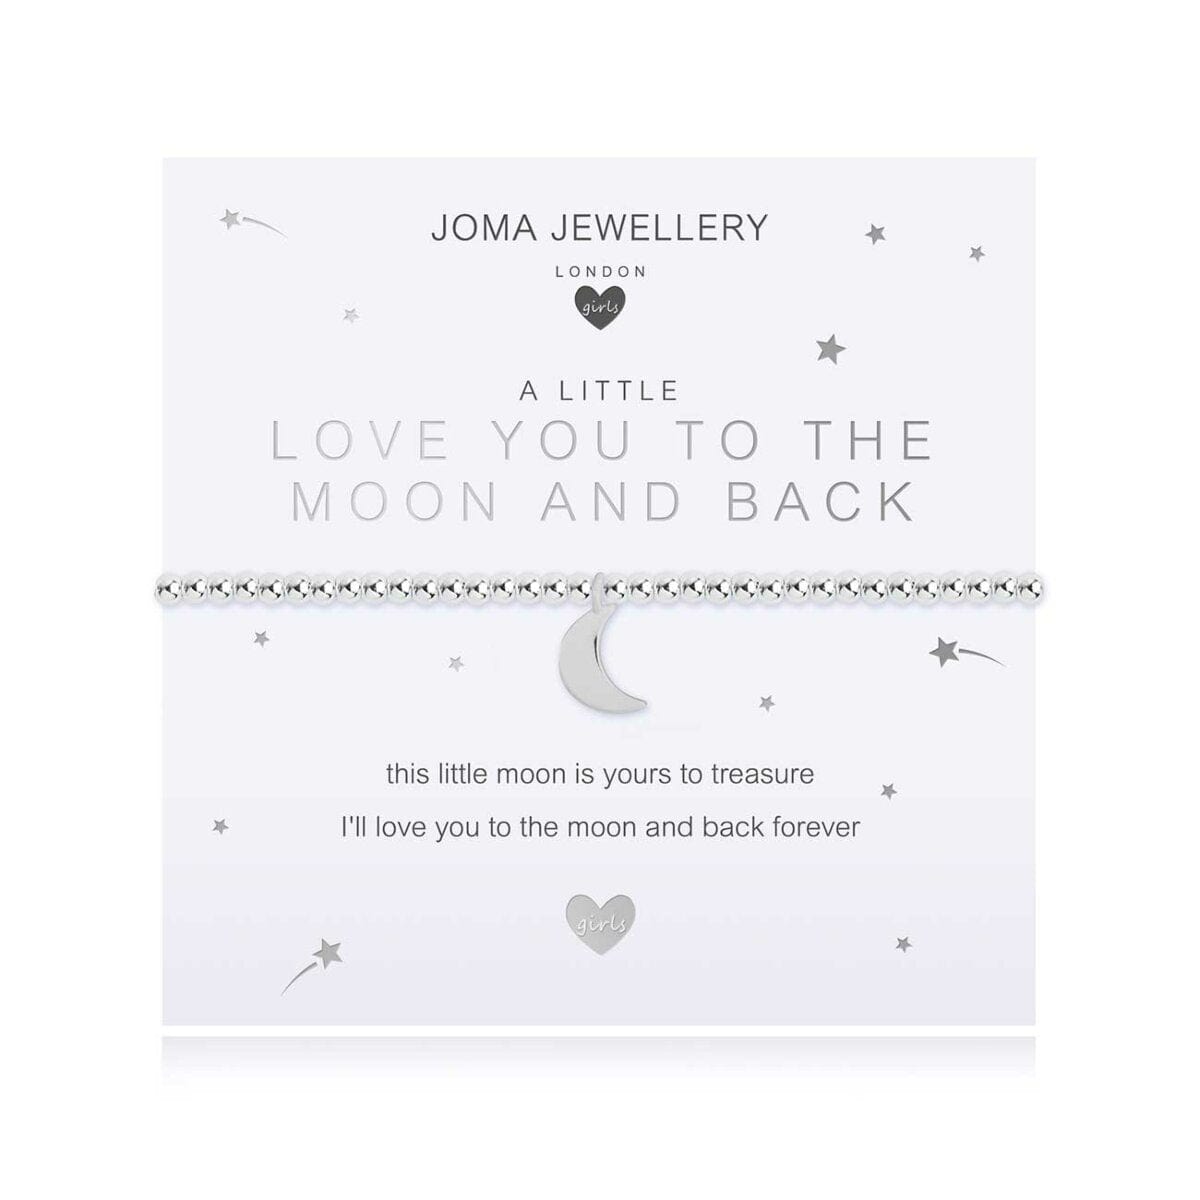 Joma Jewellery Childrens Bracelet Joma Jewellery Childrens Bracelet - A Little Love You to the Moon and Back